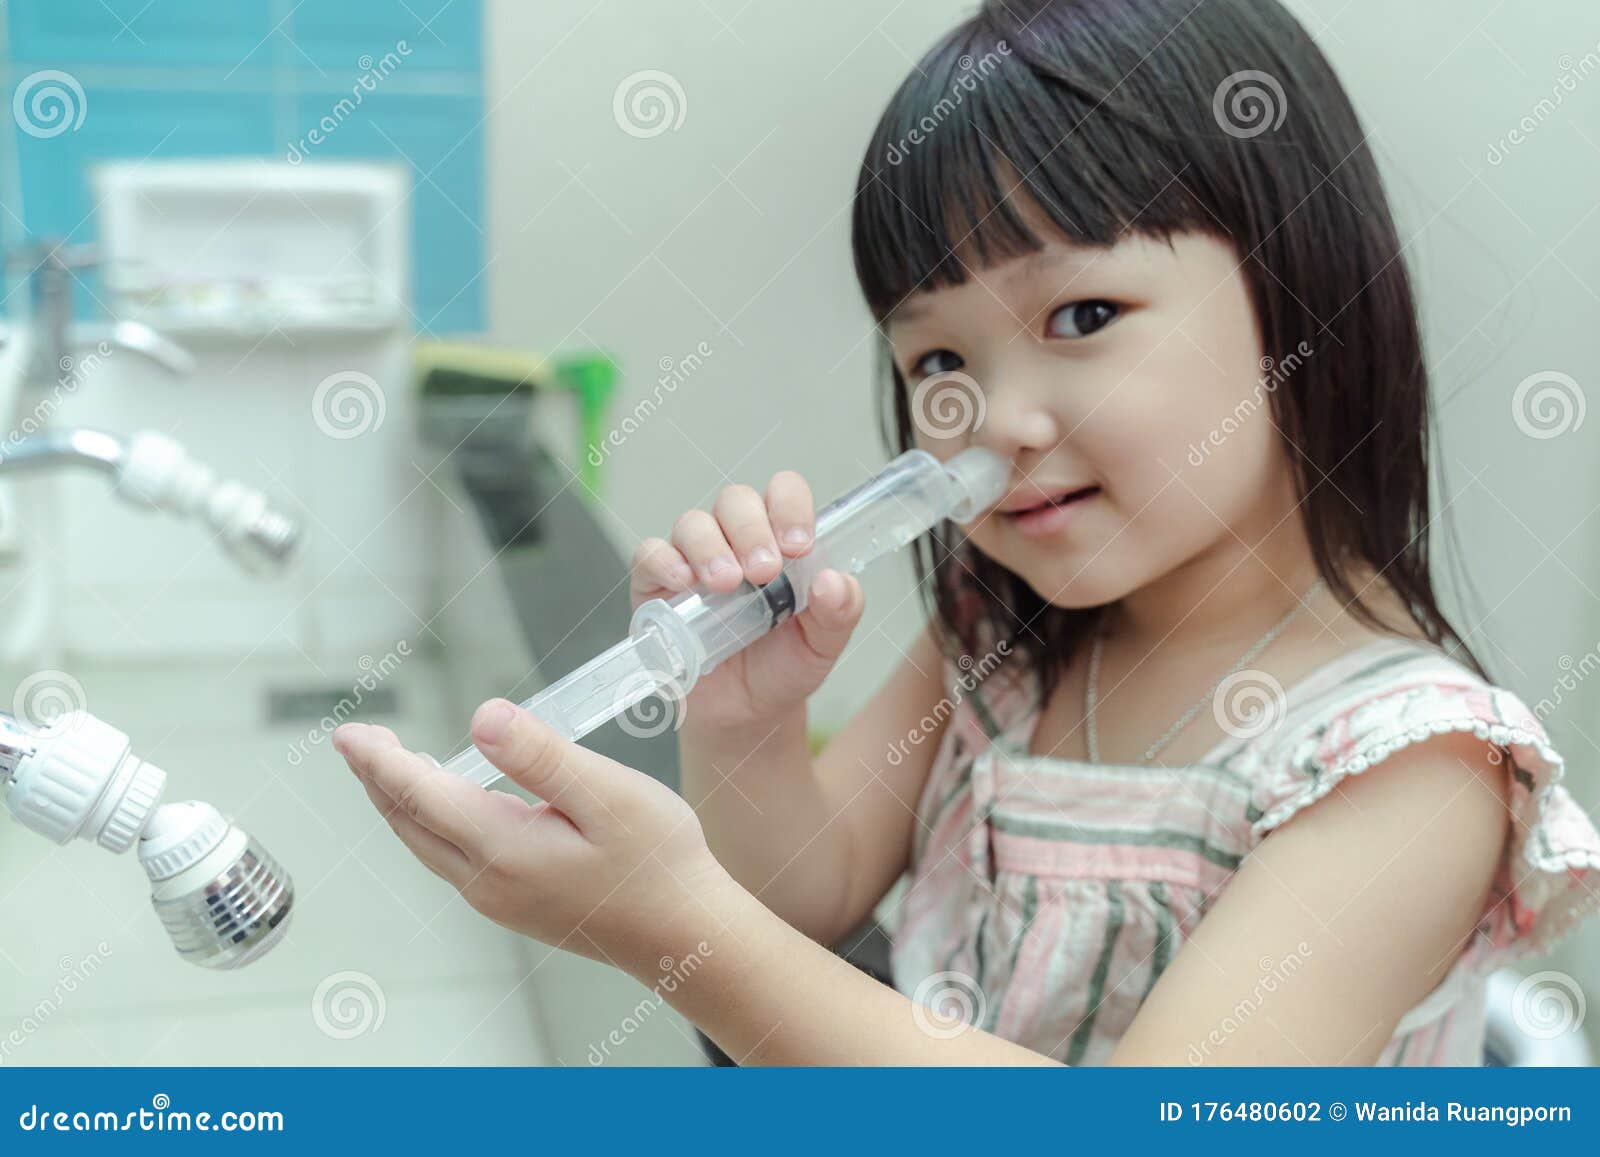 baby nasal wash